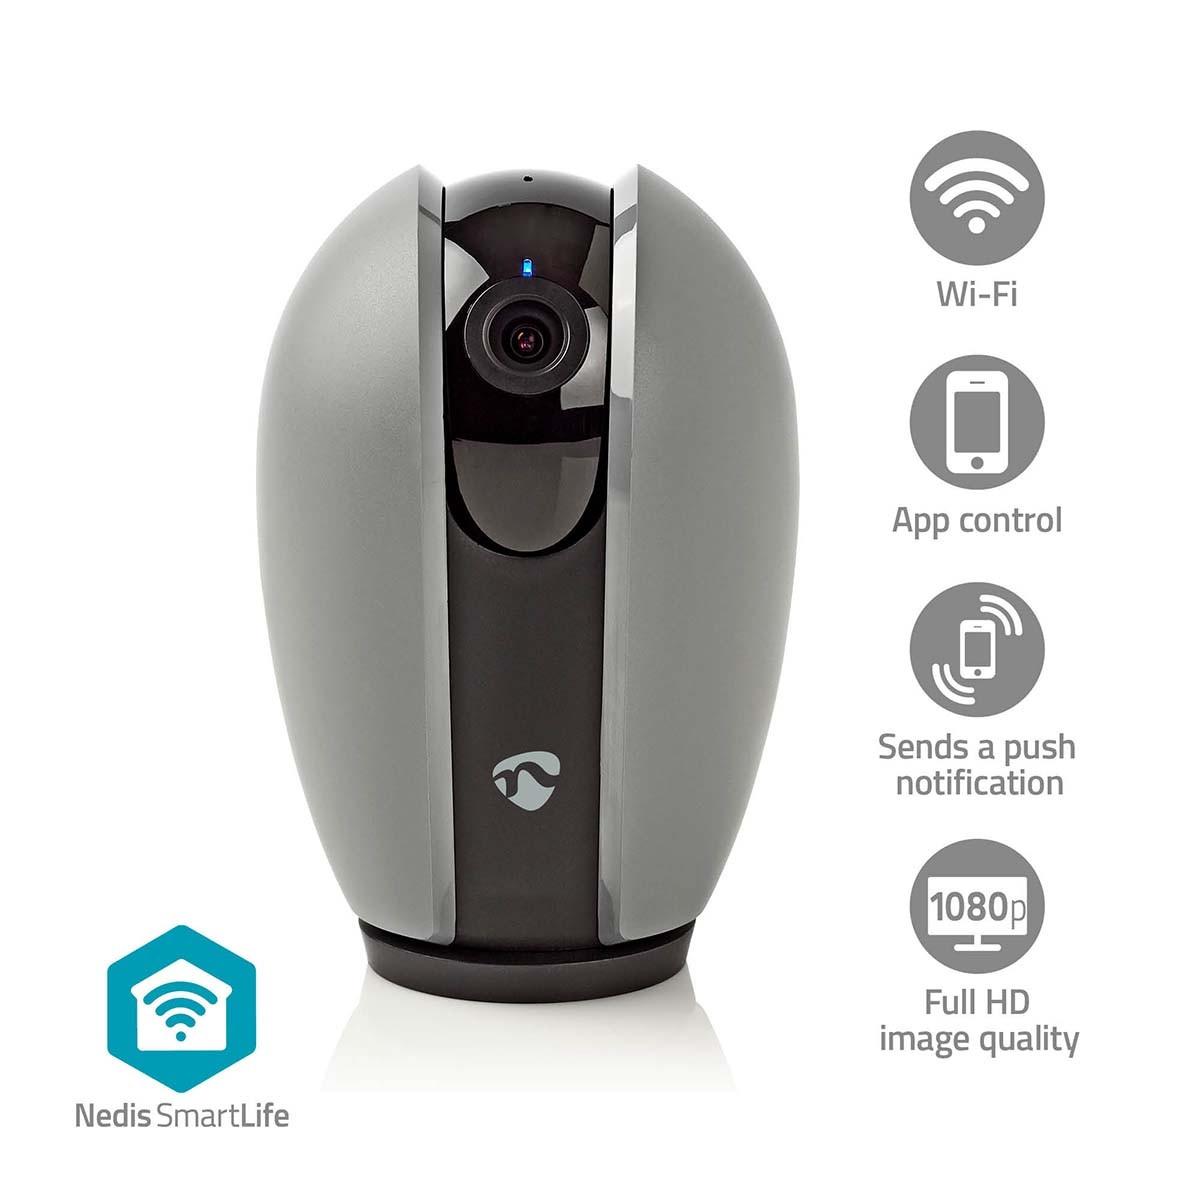 Nedis  Caméra d'intérieur SmartLife | Wi-Fi | Full HD 1080p | Pan tilt | microSD (non inclus) / Cloud storage (optionnel) | Avec détecteur de mouvement | Vision nocturne | Gris foncé / Blanc 